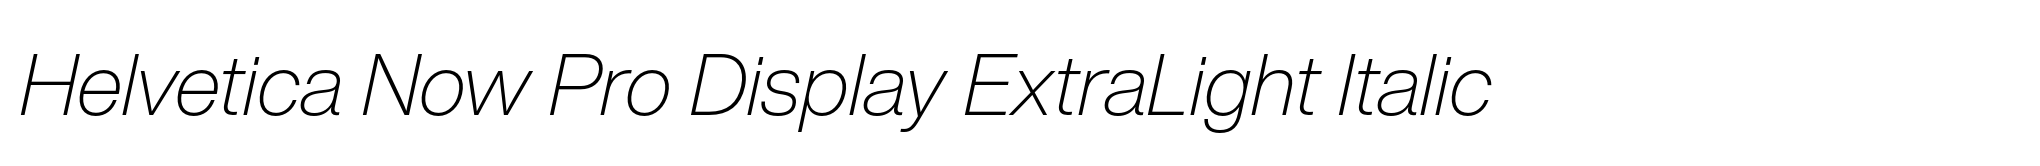 Helvetica Now Pro Display ExtraLight Italic image